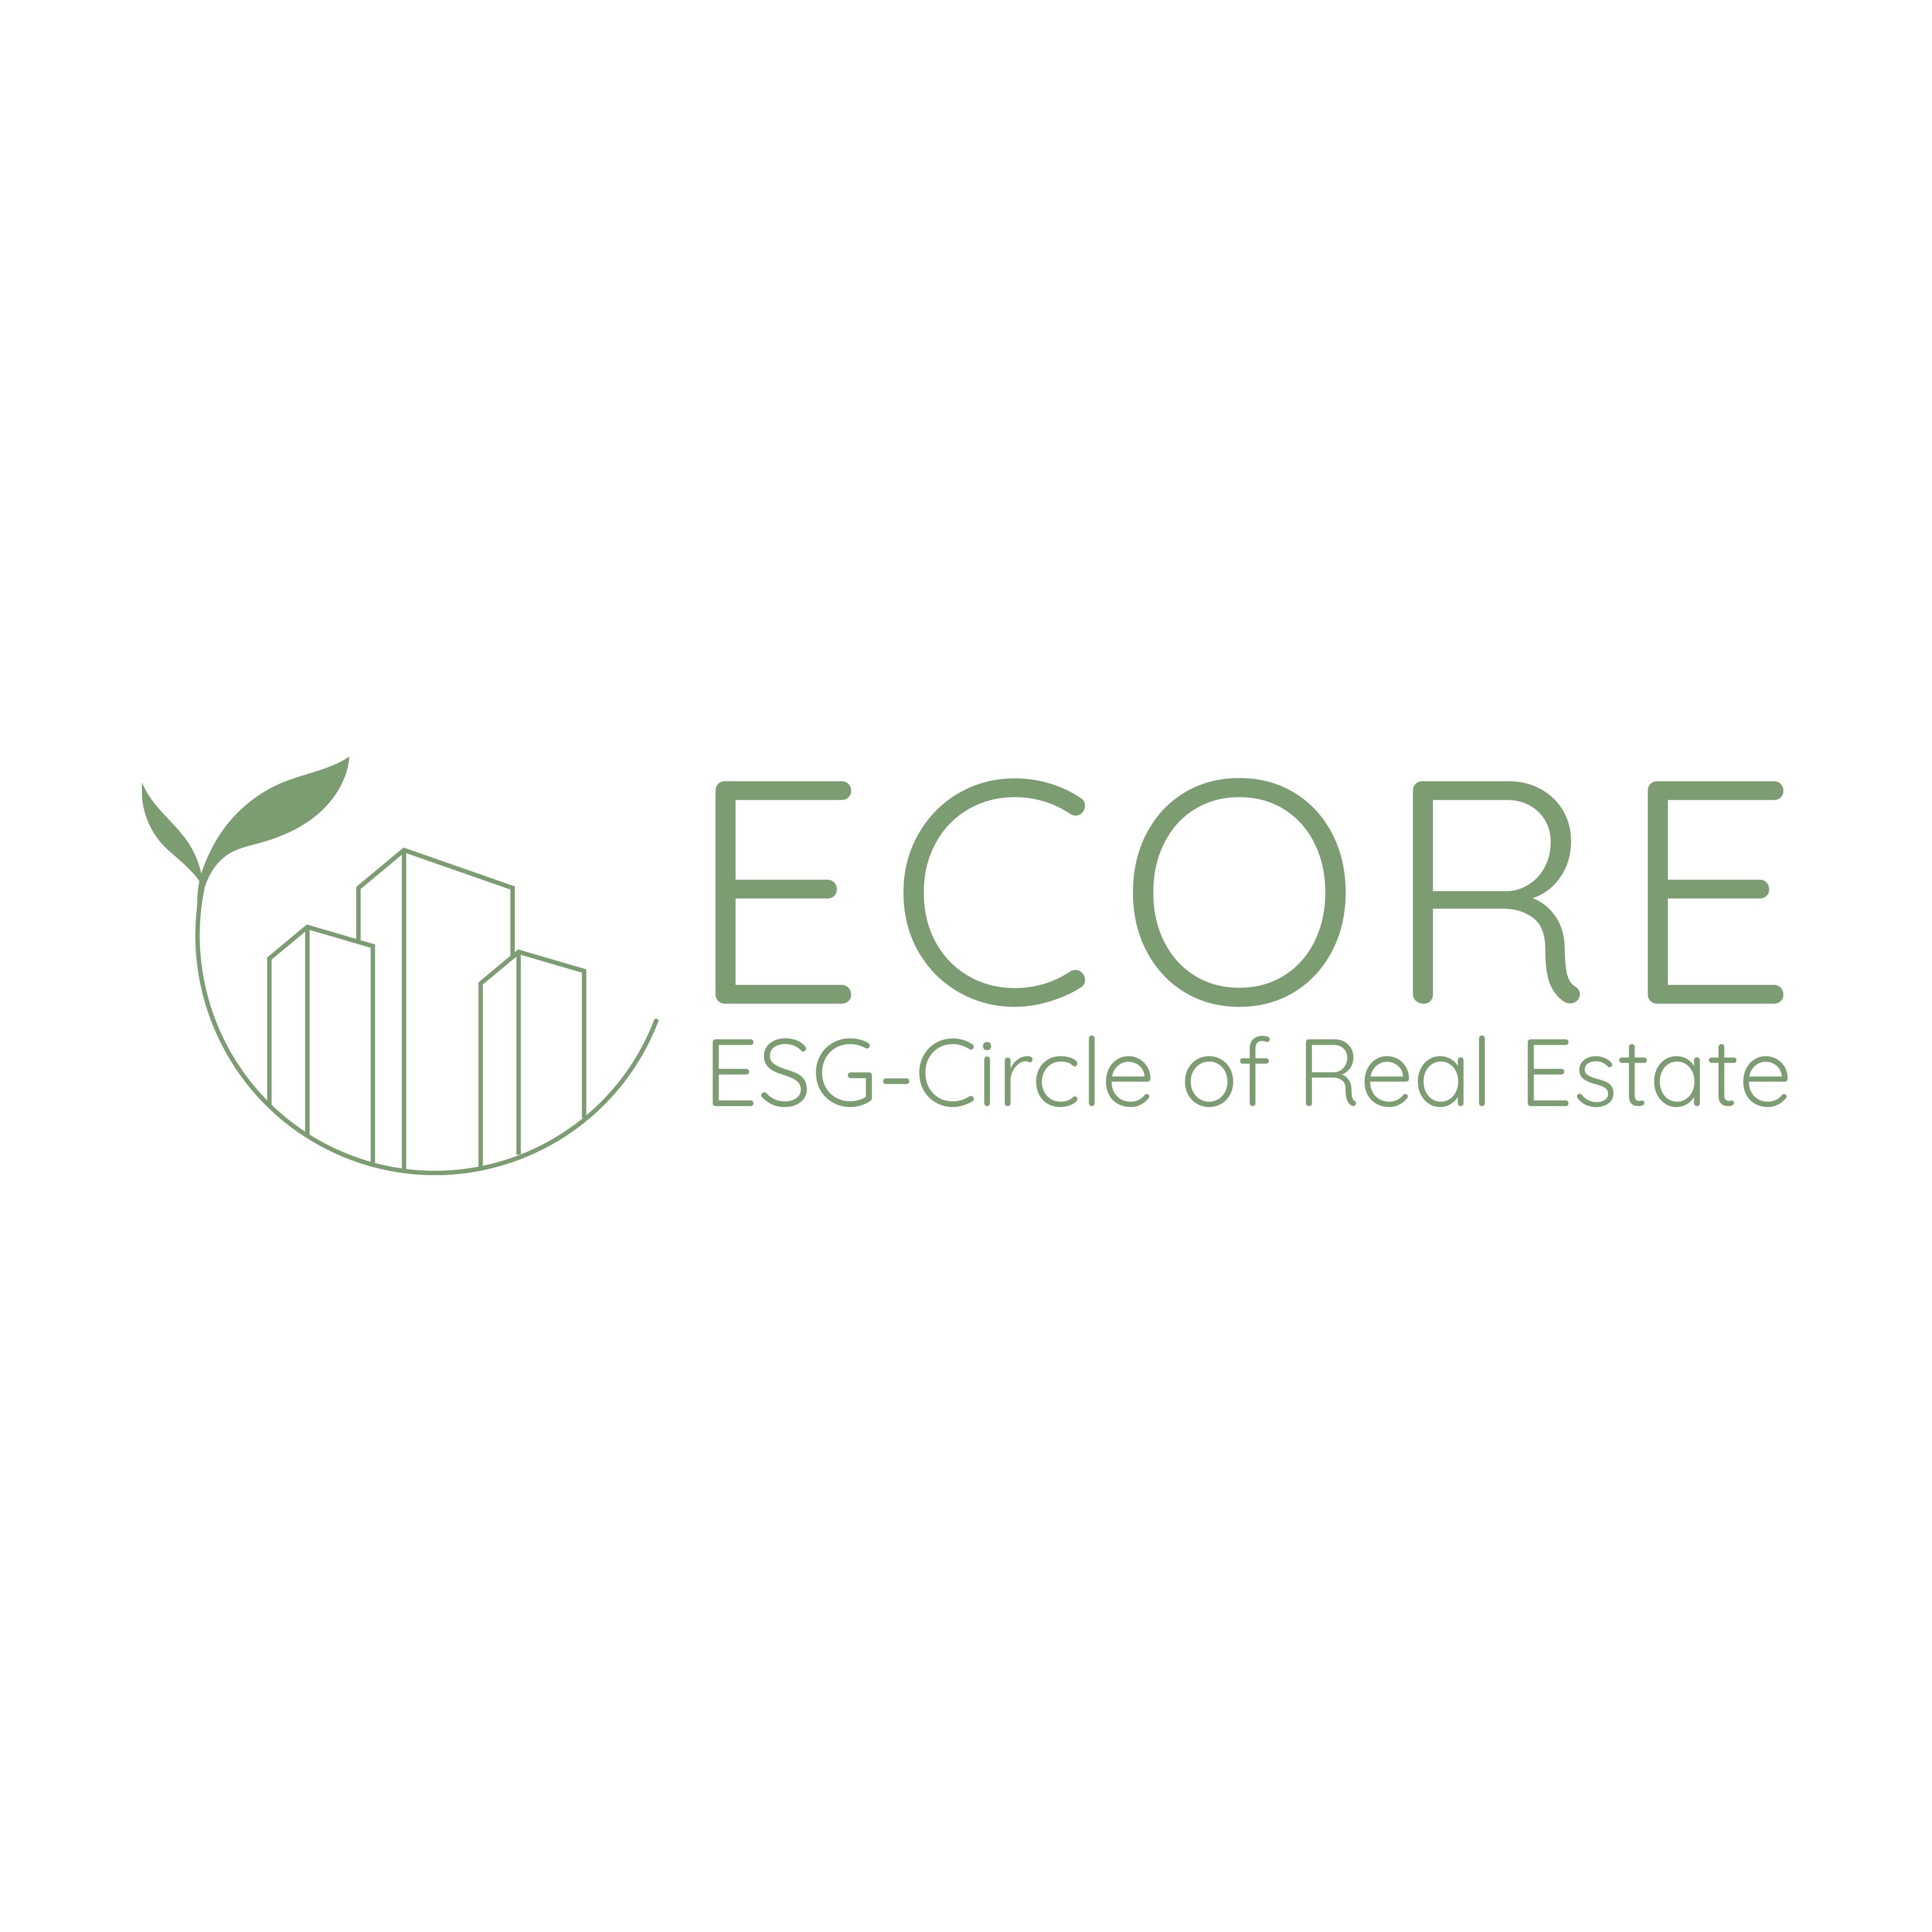 (c) Ecore-scoring.com